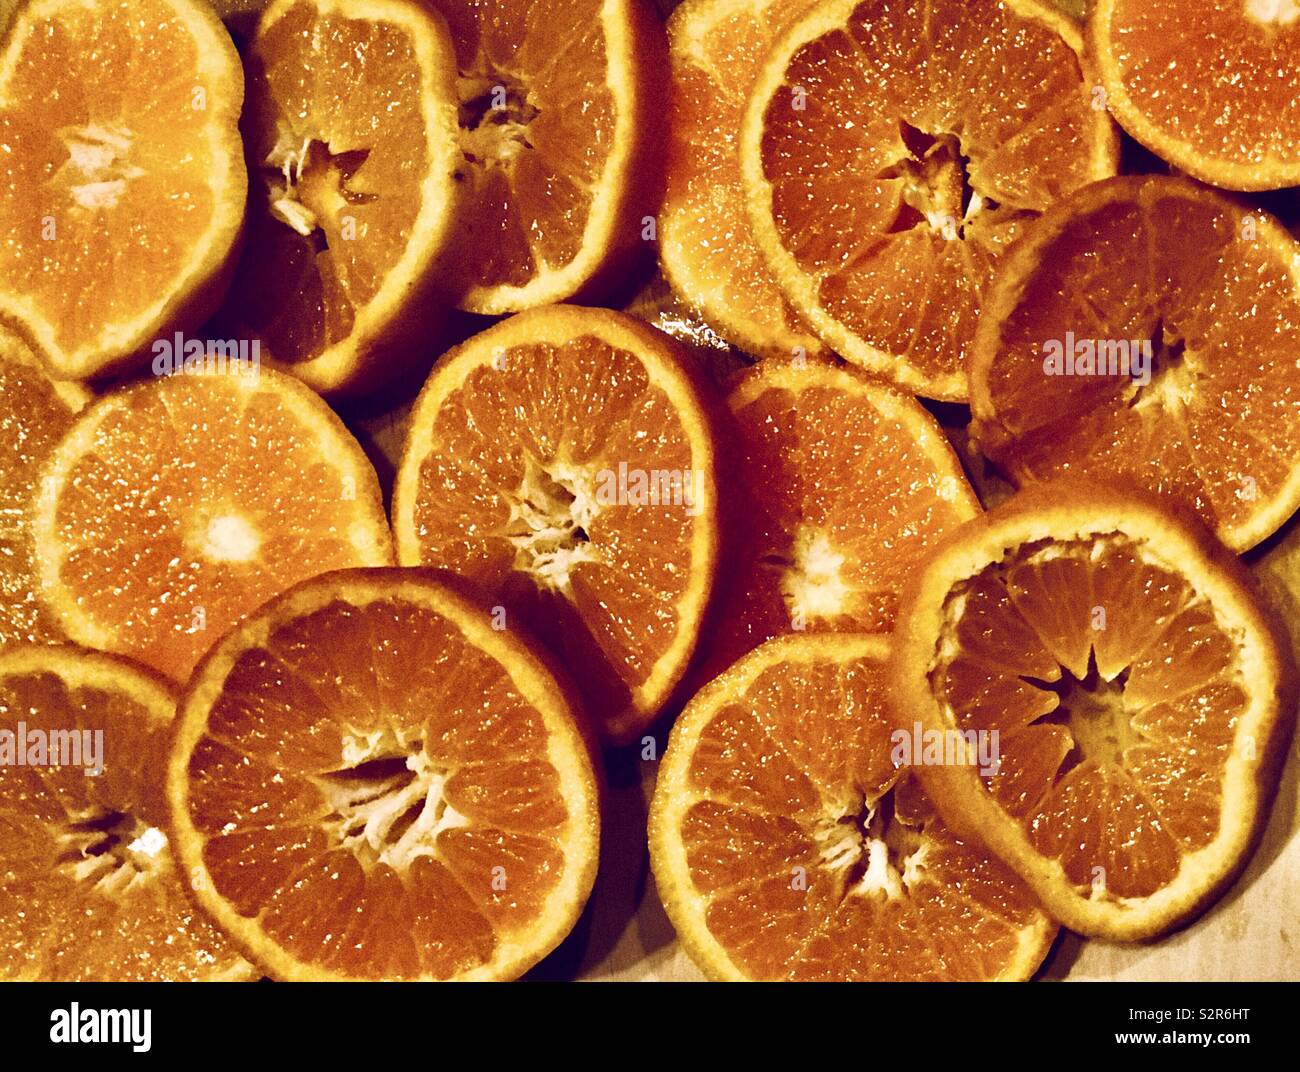 Les oranges séchées et déshydratées sur l'affichage Banque D'Images